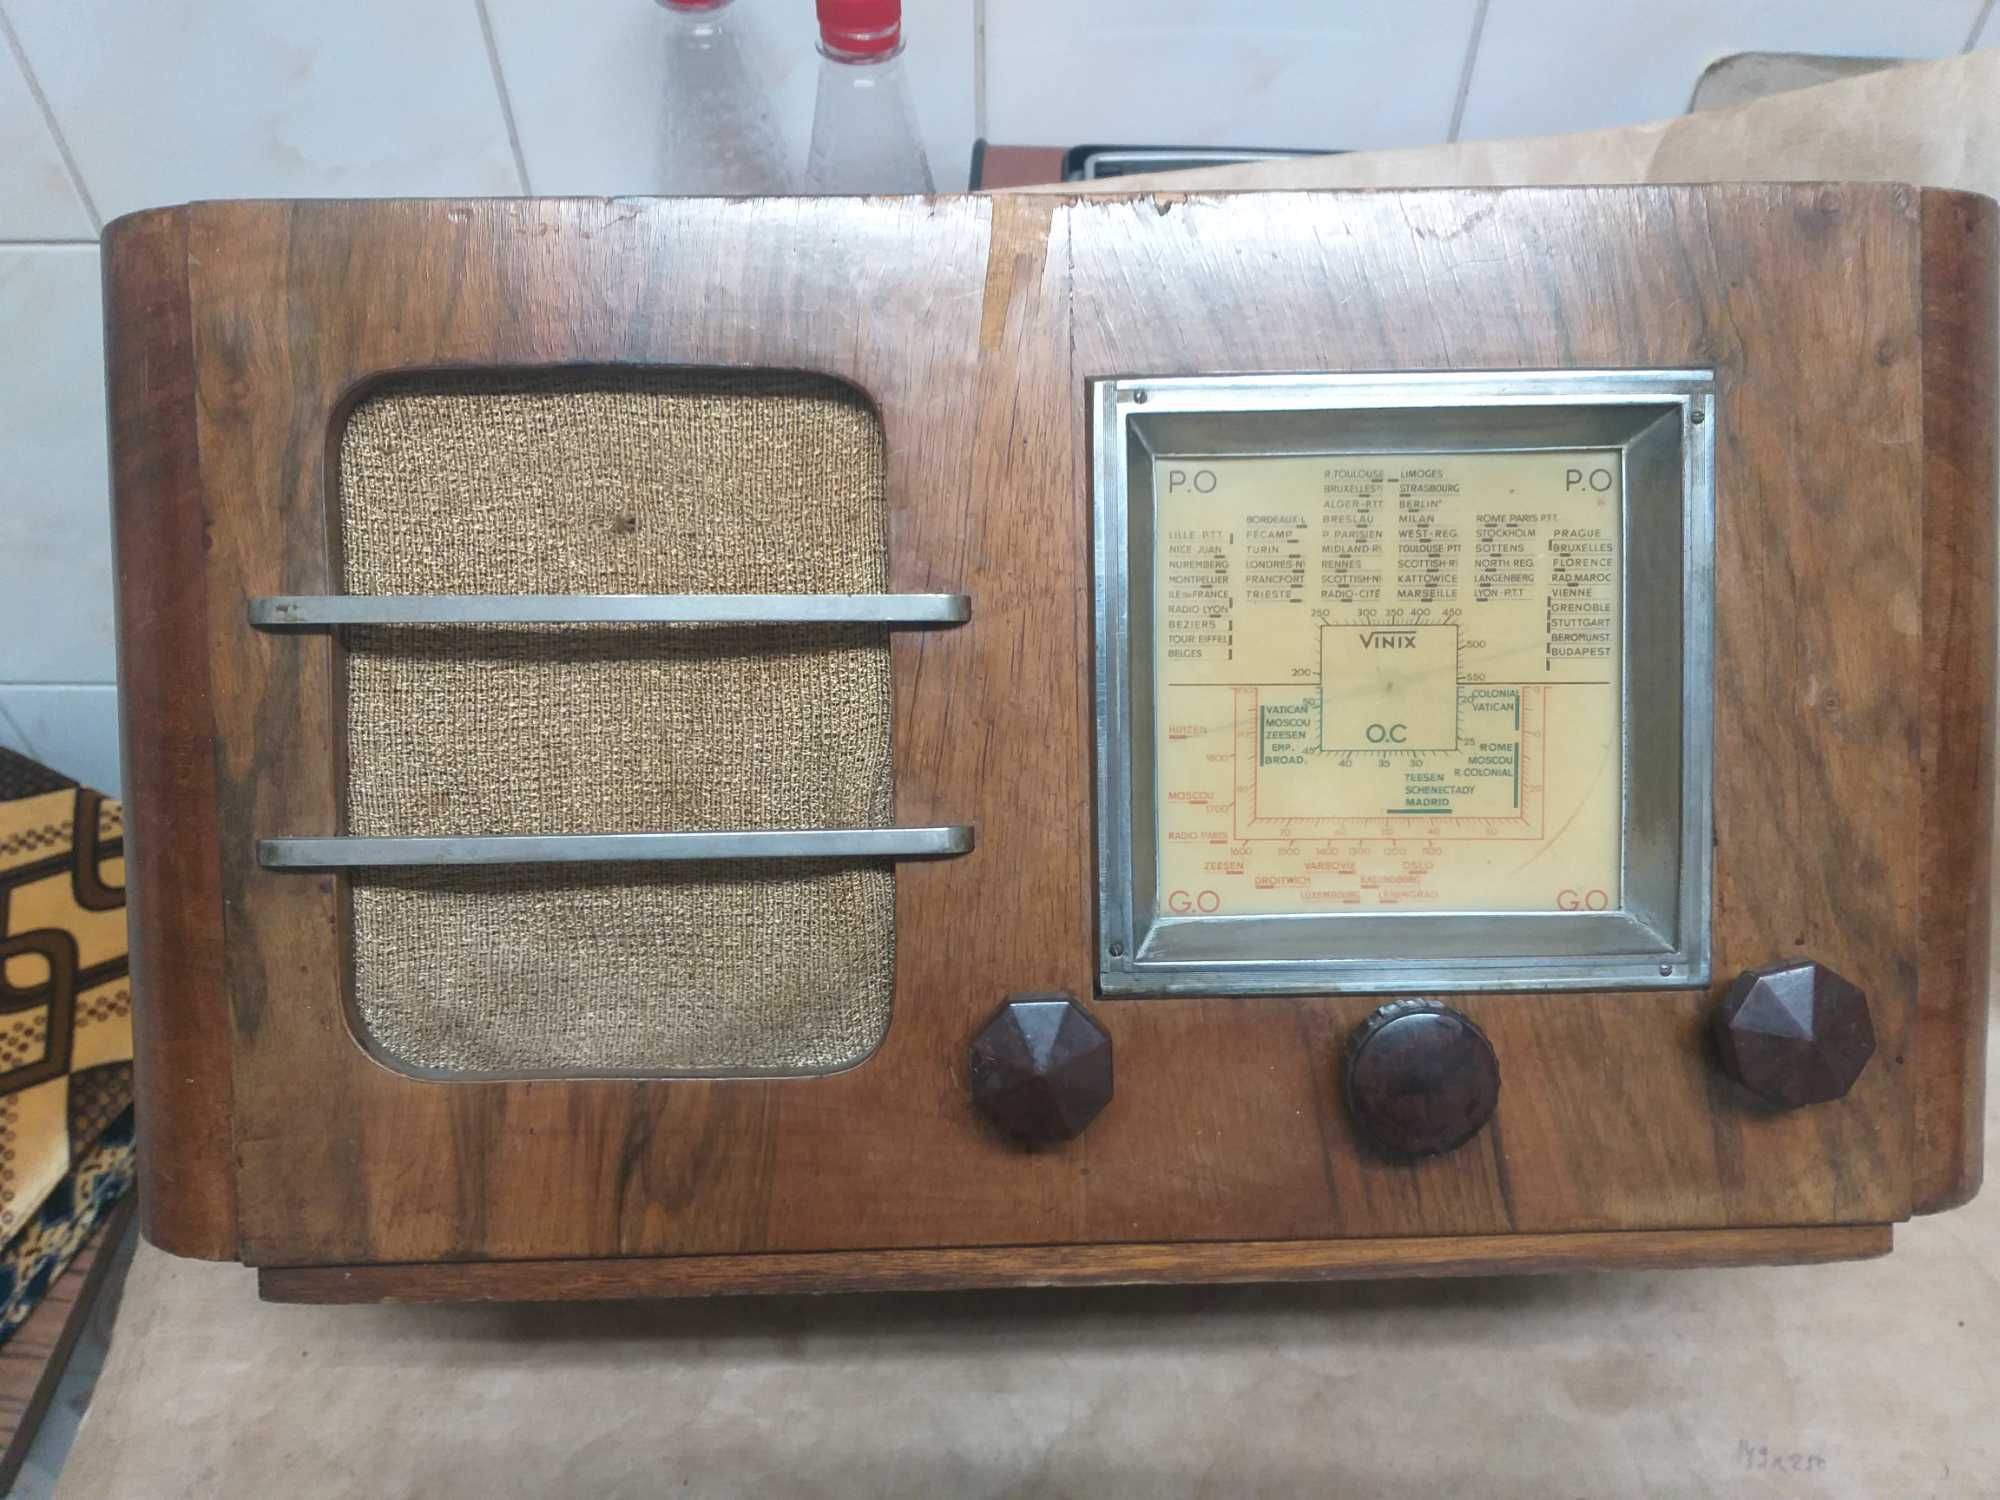 Piese de radio foarte vechi